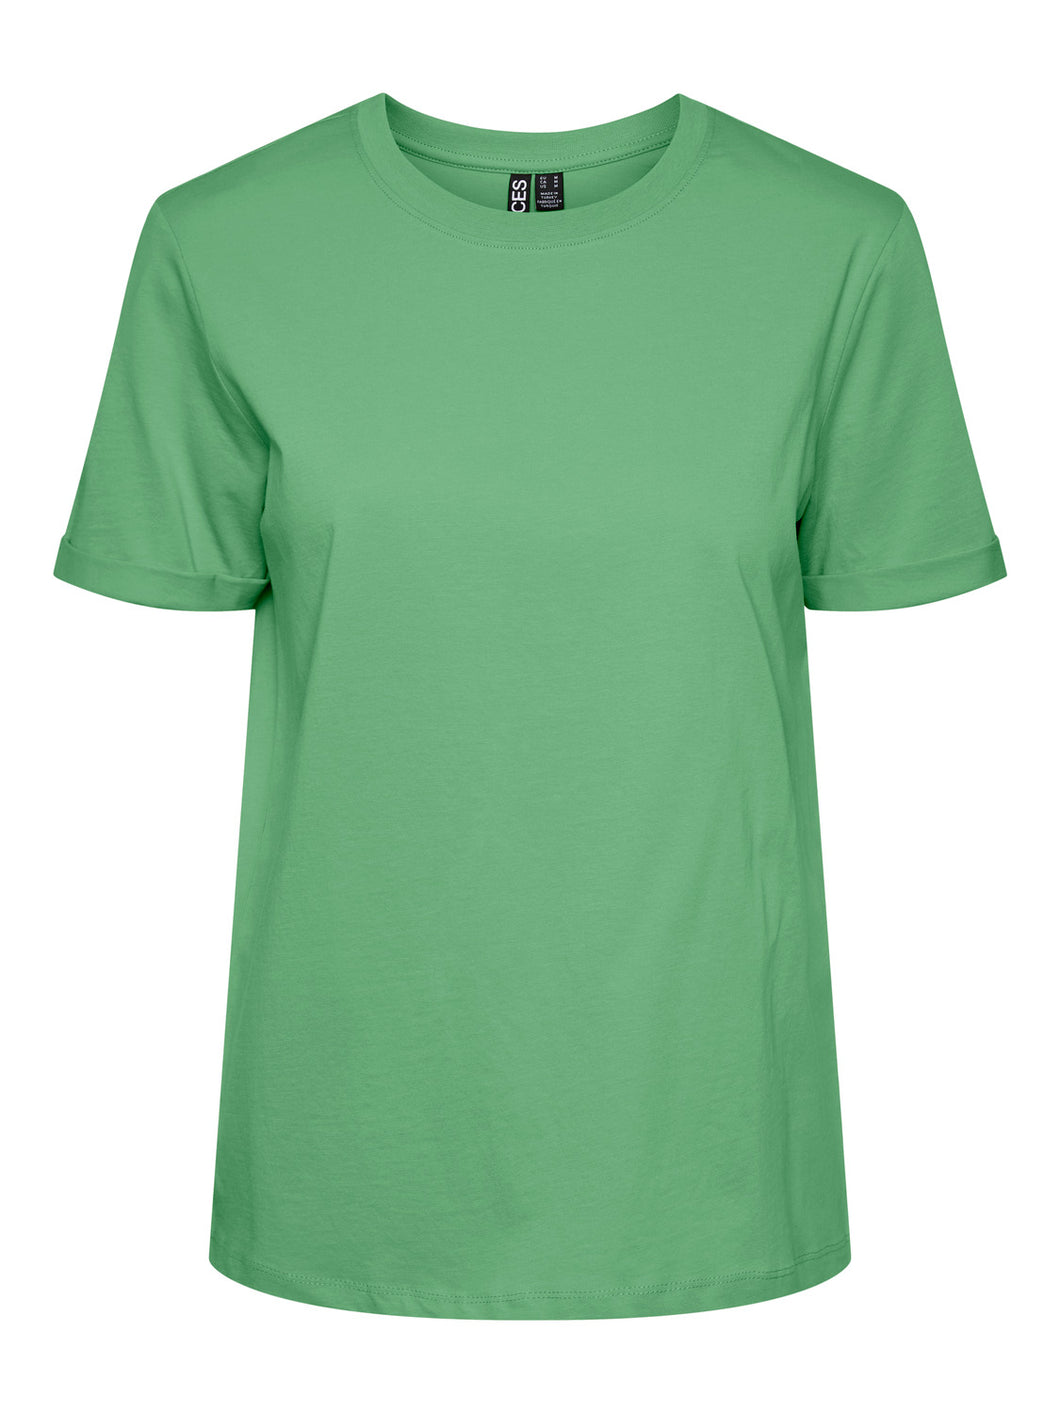 PCRIA T-Shirt - Absinthe Green